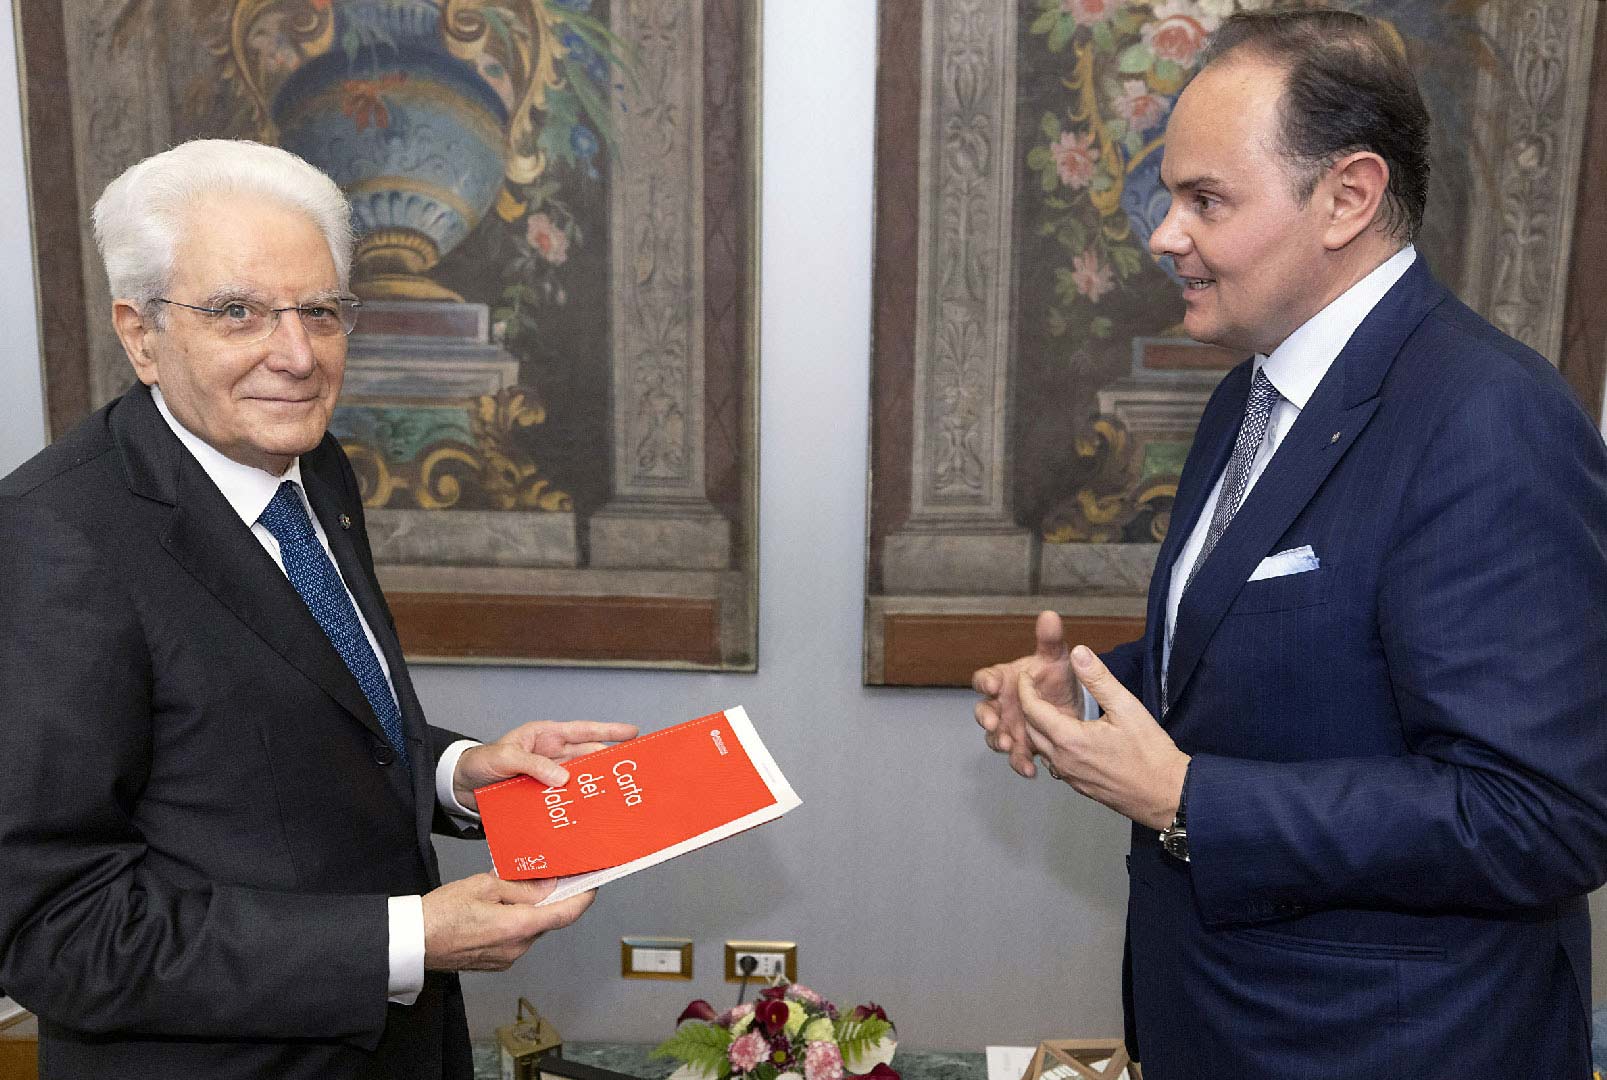 Matteo Lunelli e il Presidente Mattarella alla consegna la Carta dei Valori